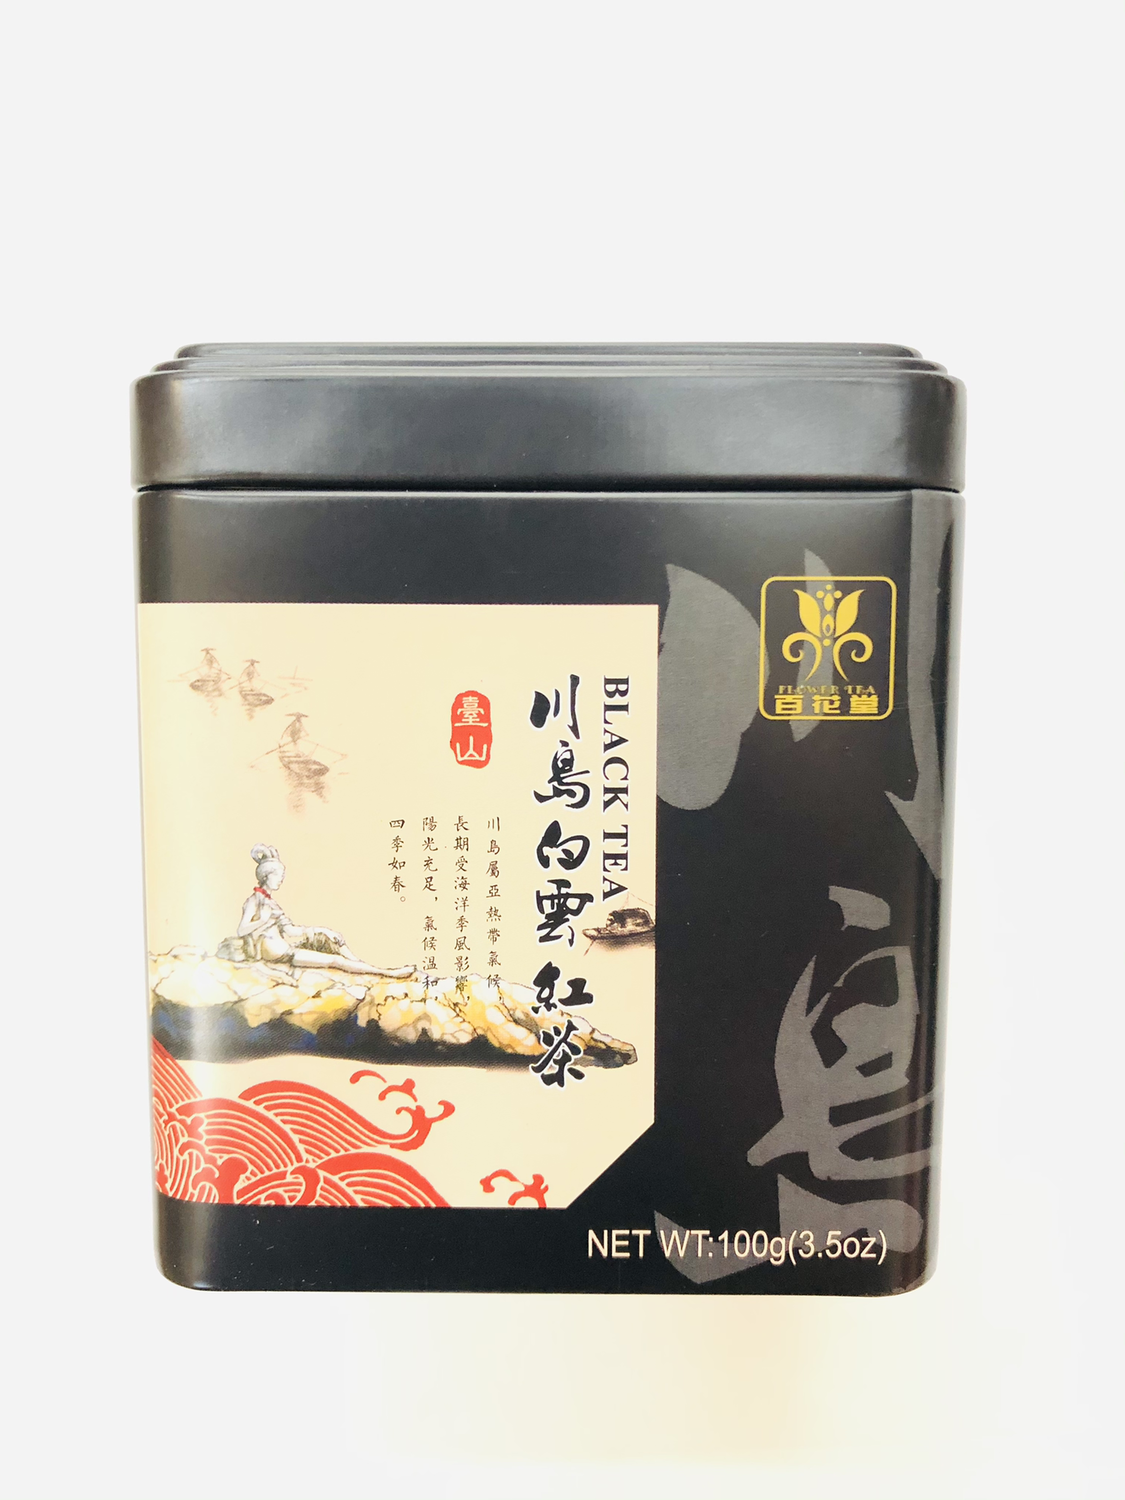 GROC【杂货】百花堂 川岛白云红茶 100g(3.5oz)